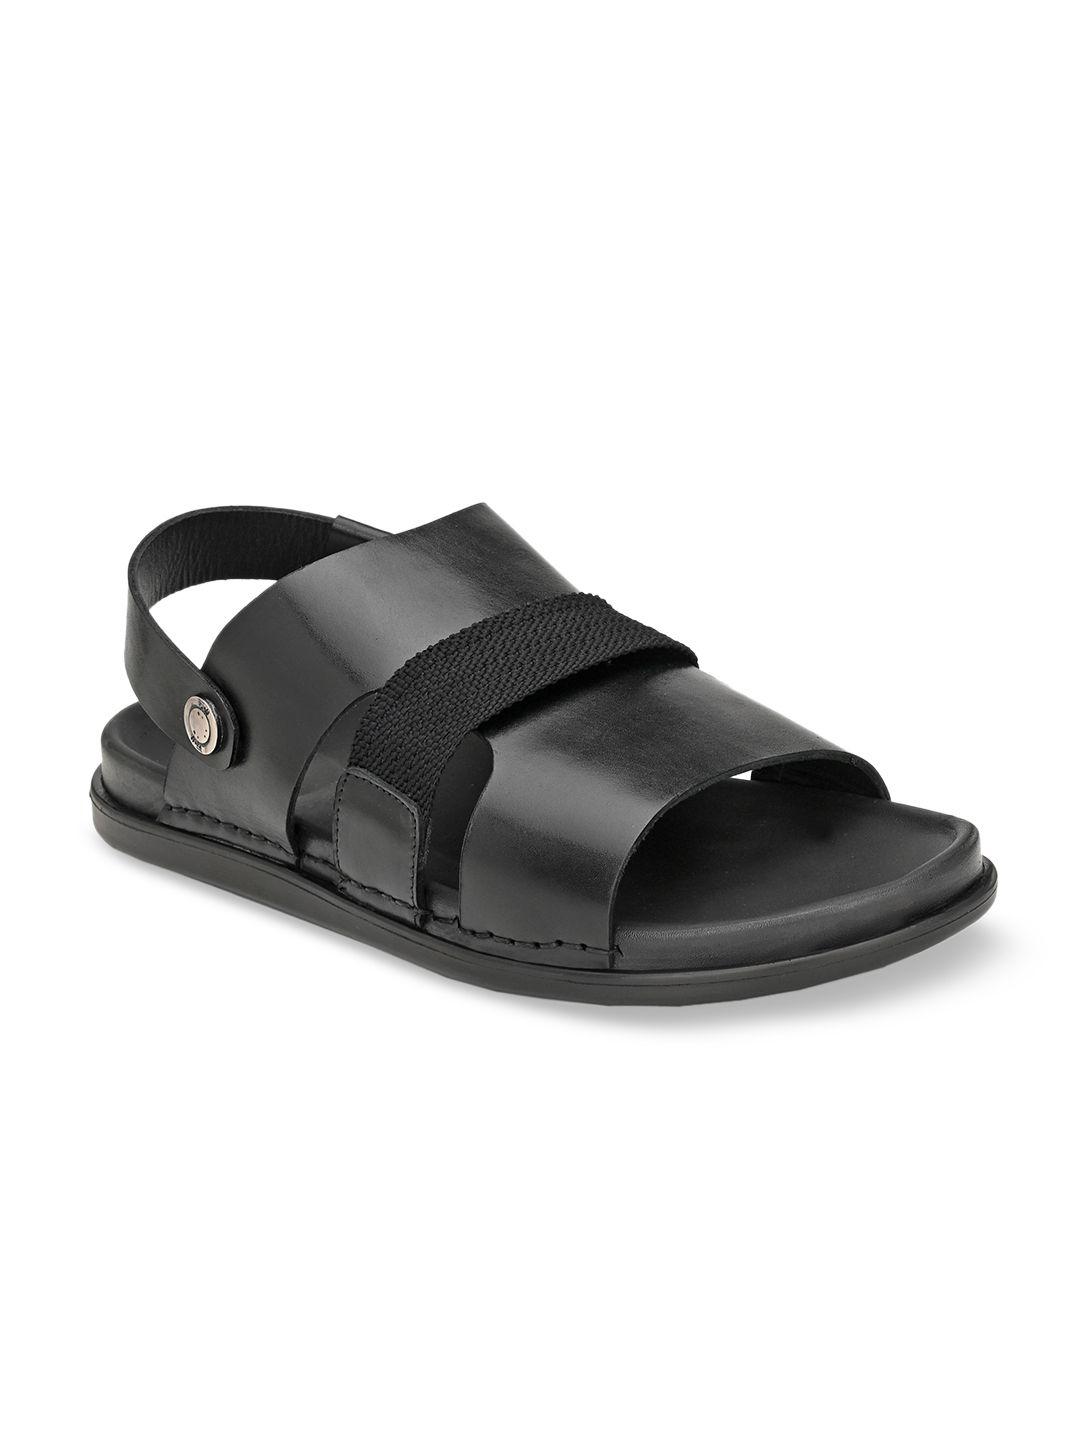 hitz men black leather comfort sandals